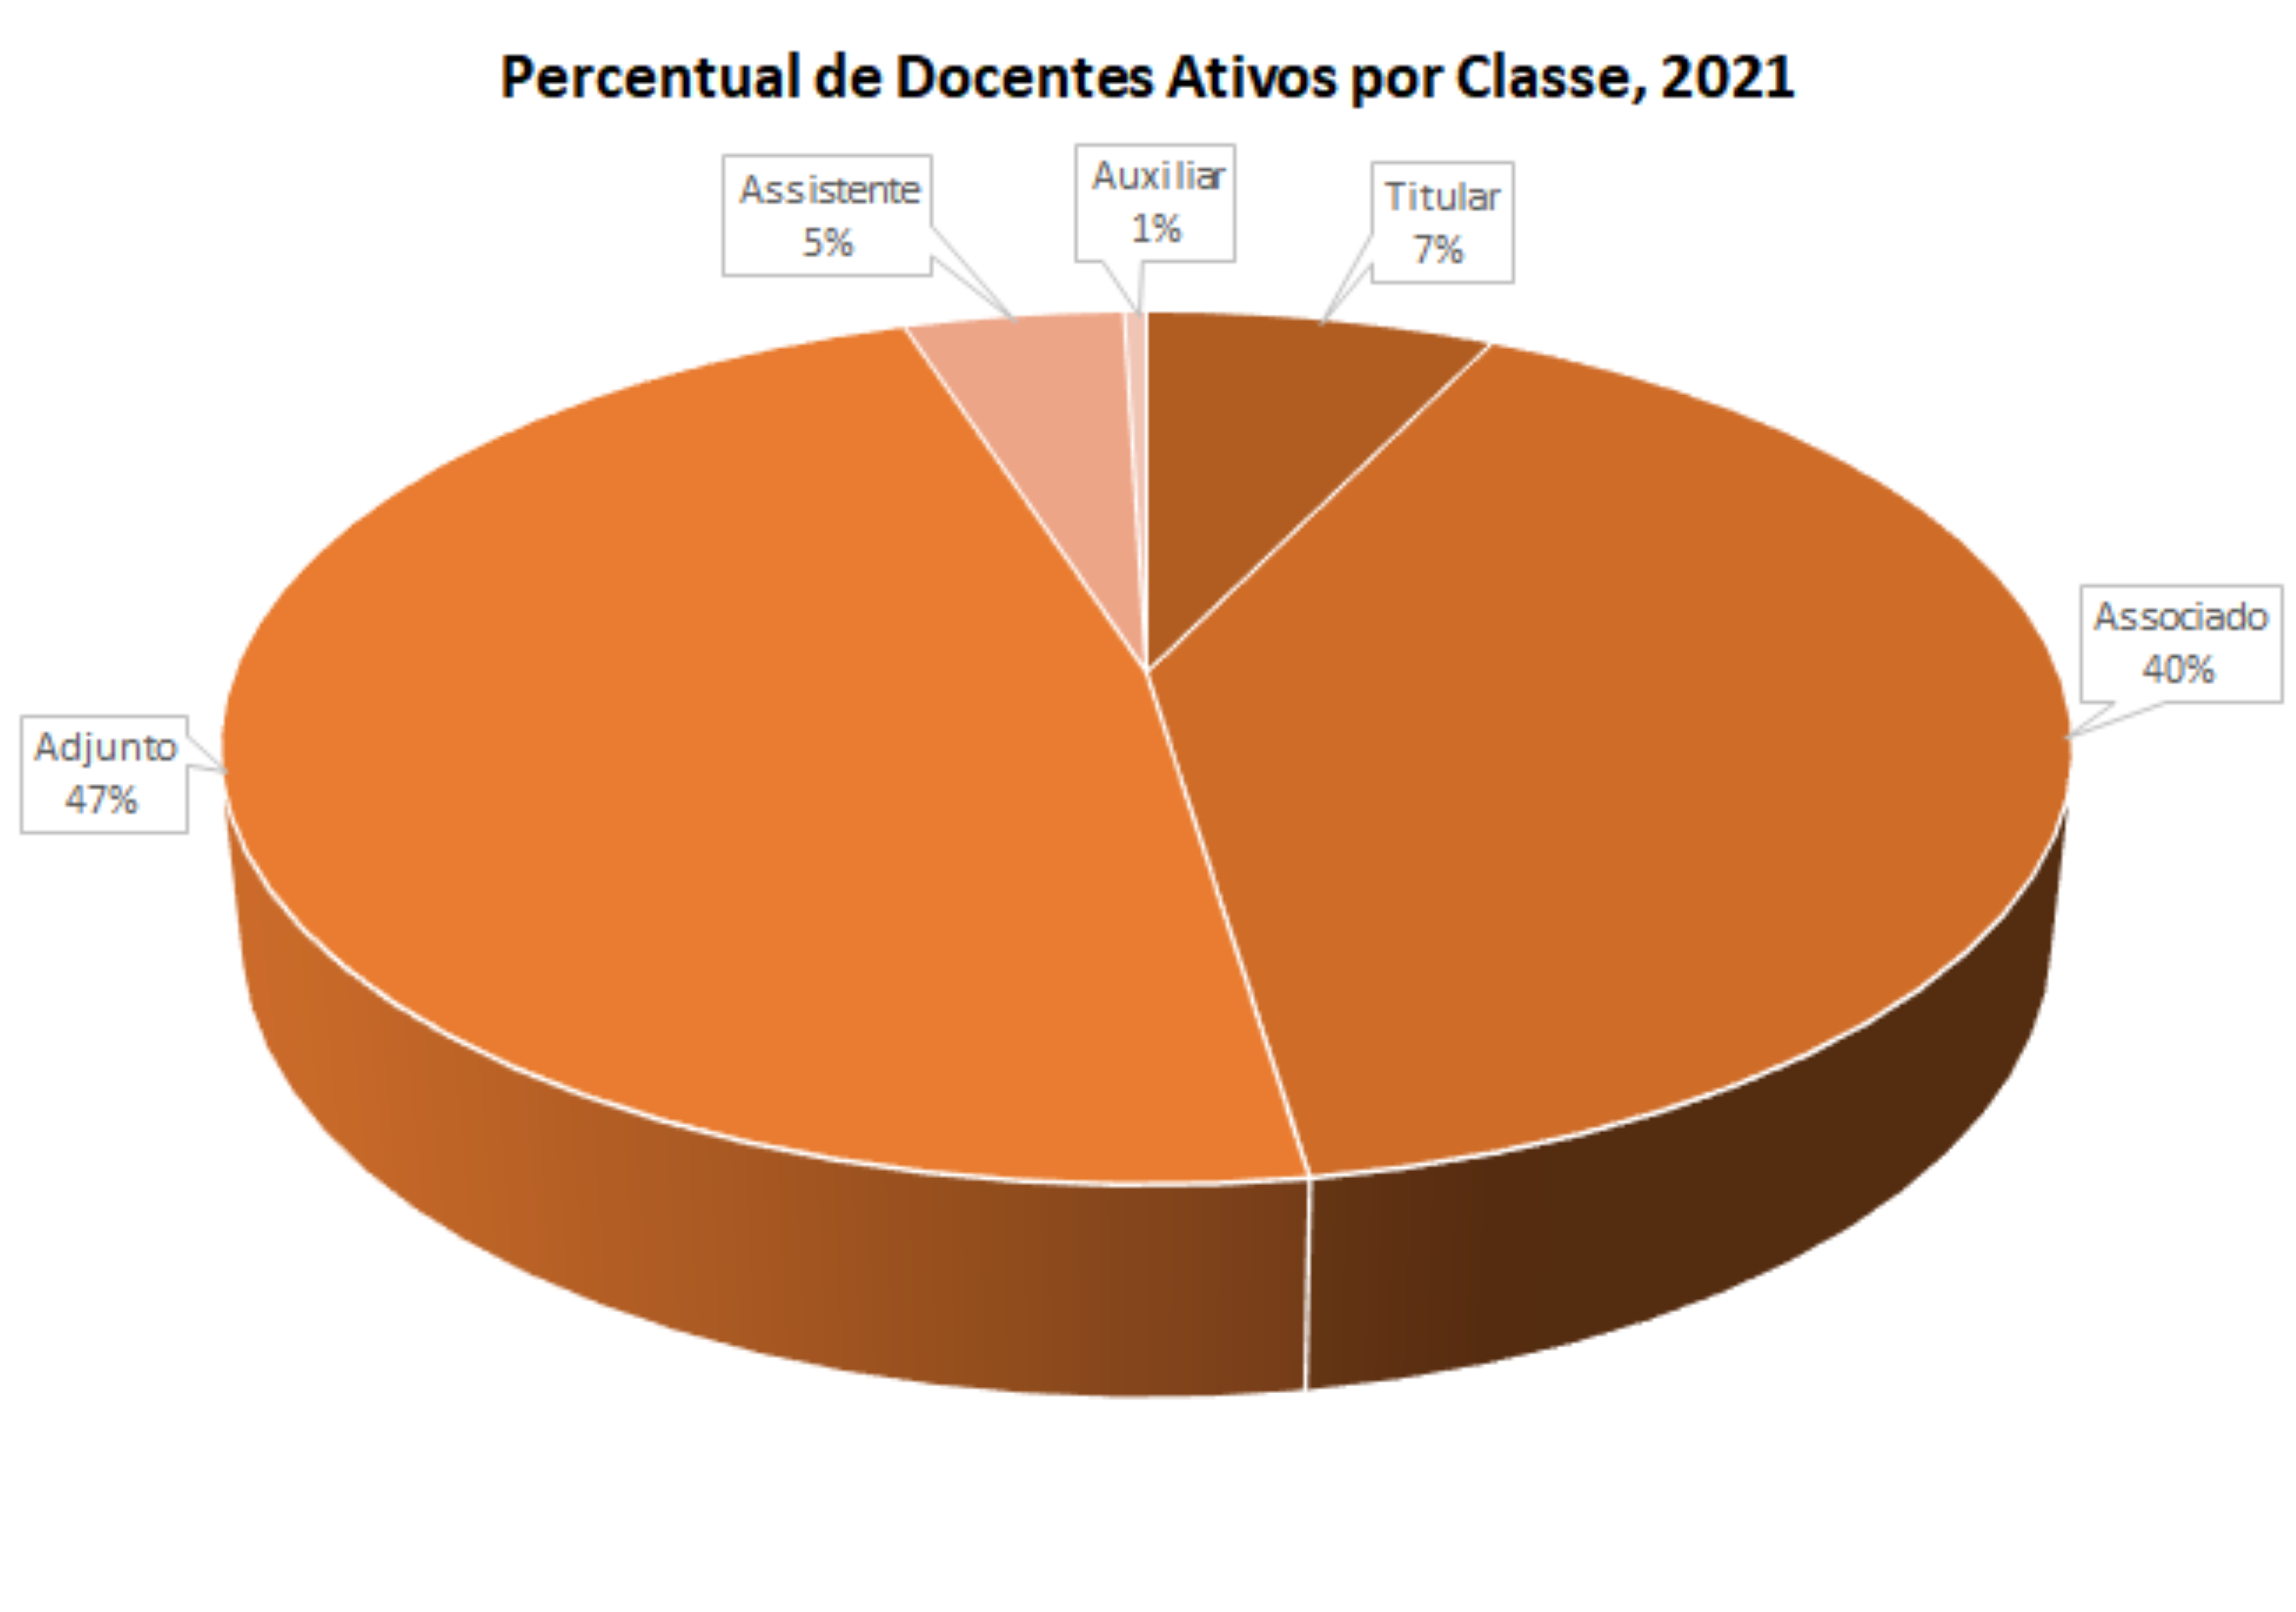 Percentual de docentes ativos por classe, 2021